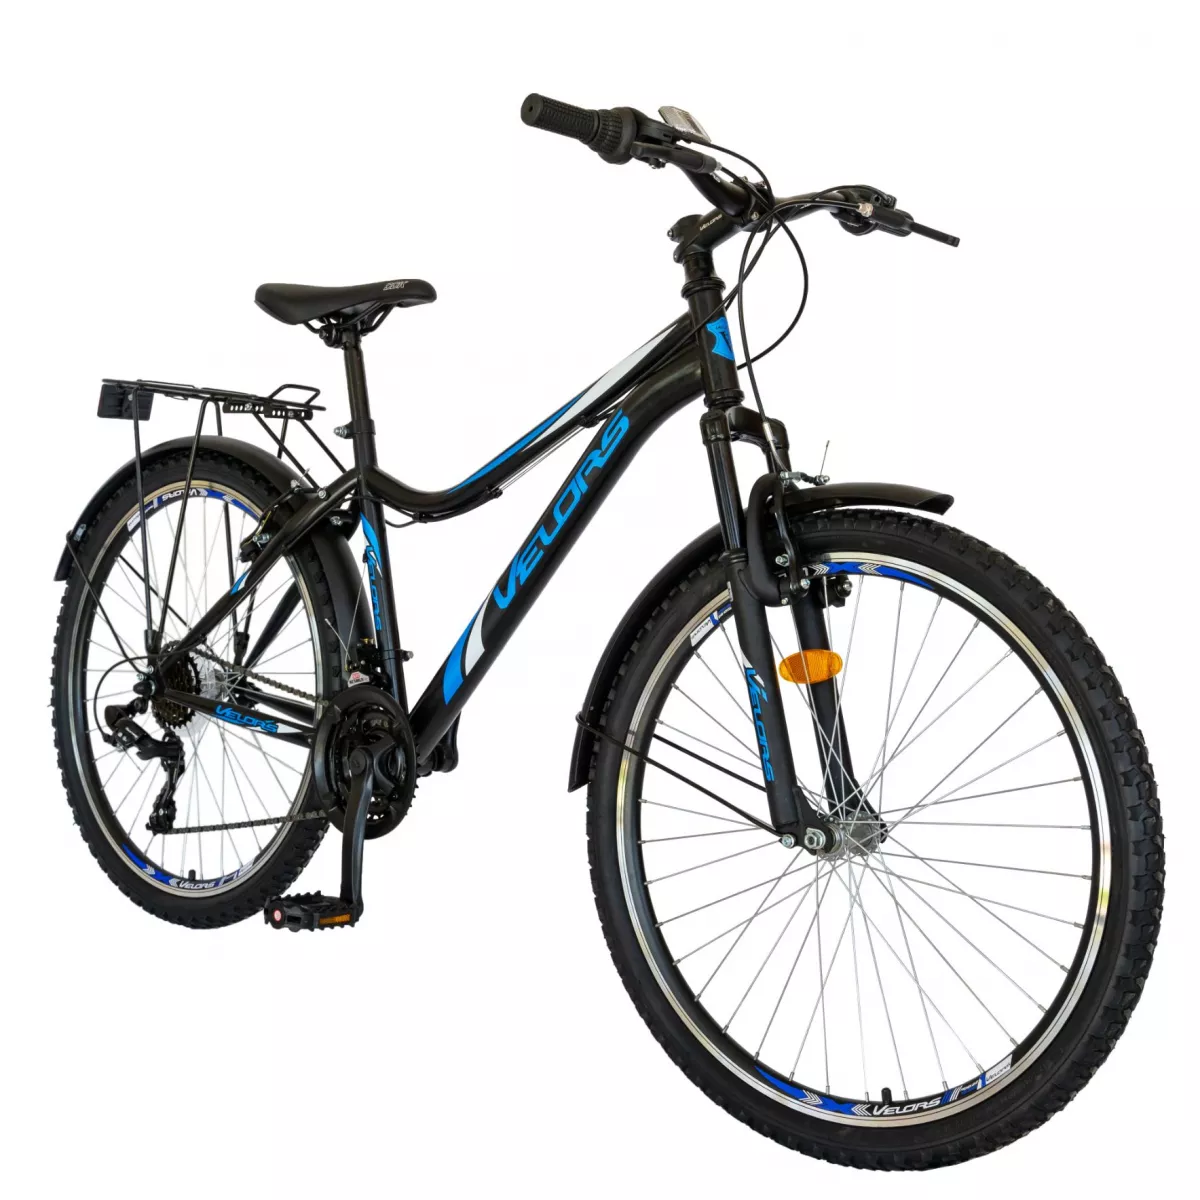 Bicicleta CITY Velors V2633B, roata 26 inch, echipare Shimano, 18 viteze, culoare negru/albastru